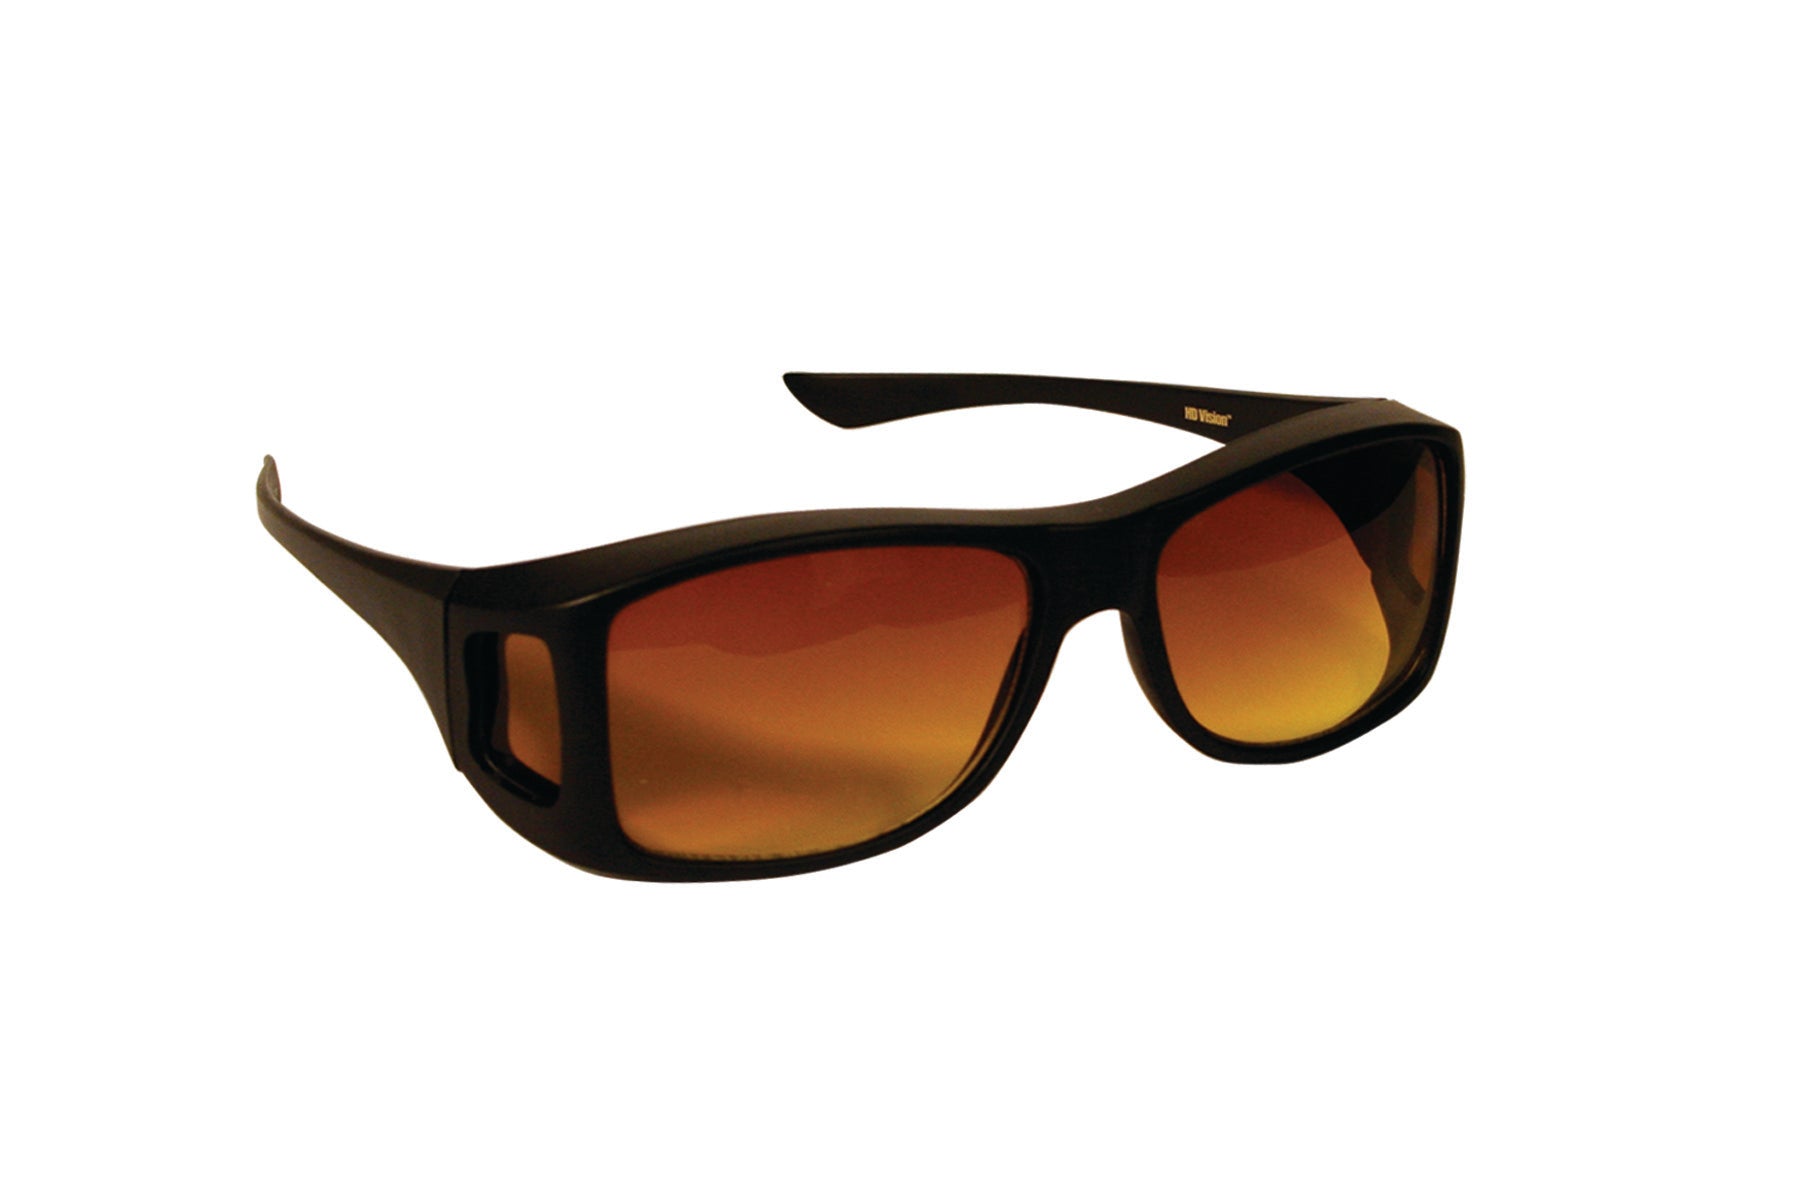 HD Vision Wraparound Sun Glasses – the ORIGINAL Fit Over Glasses